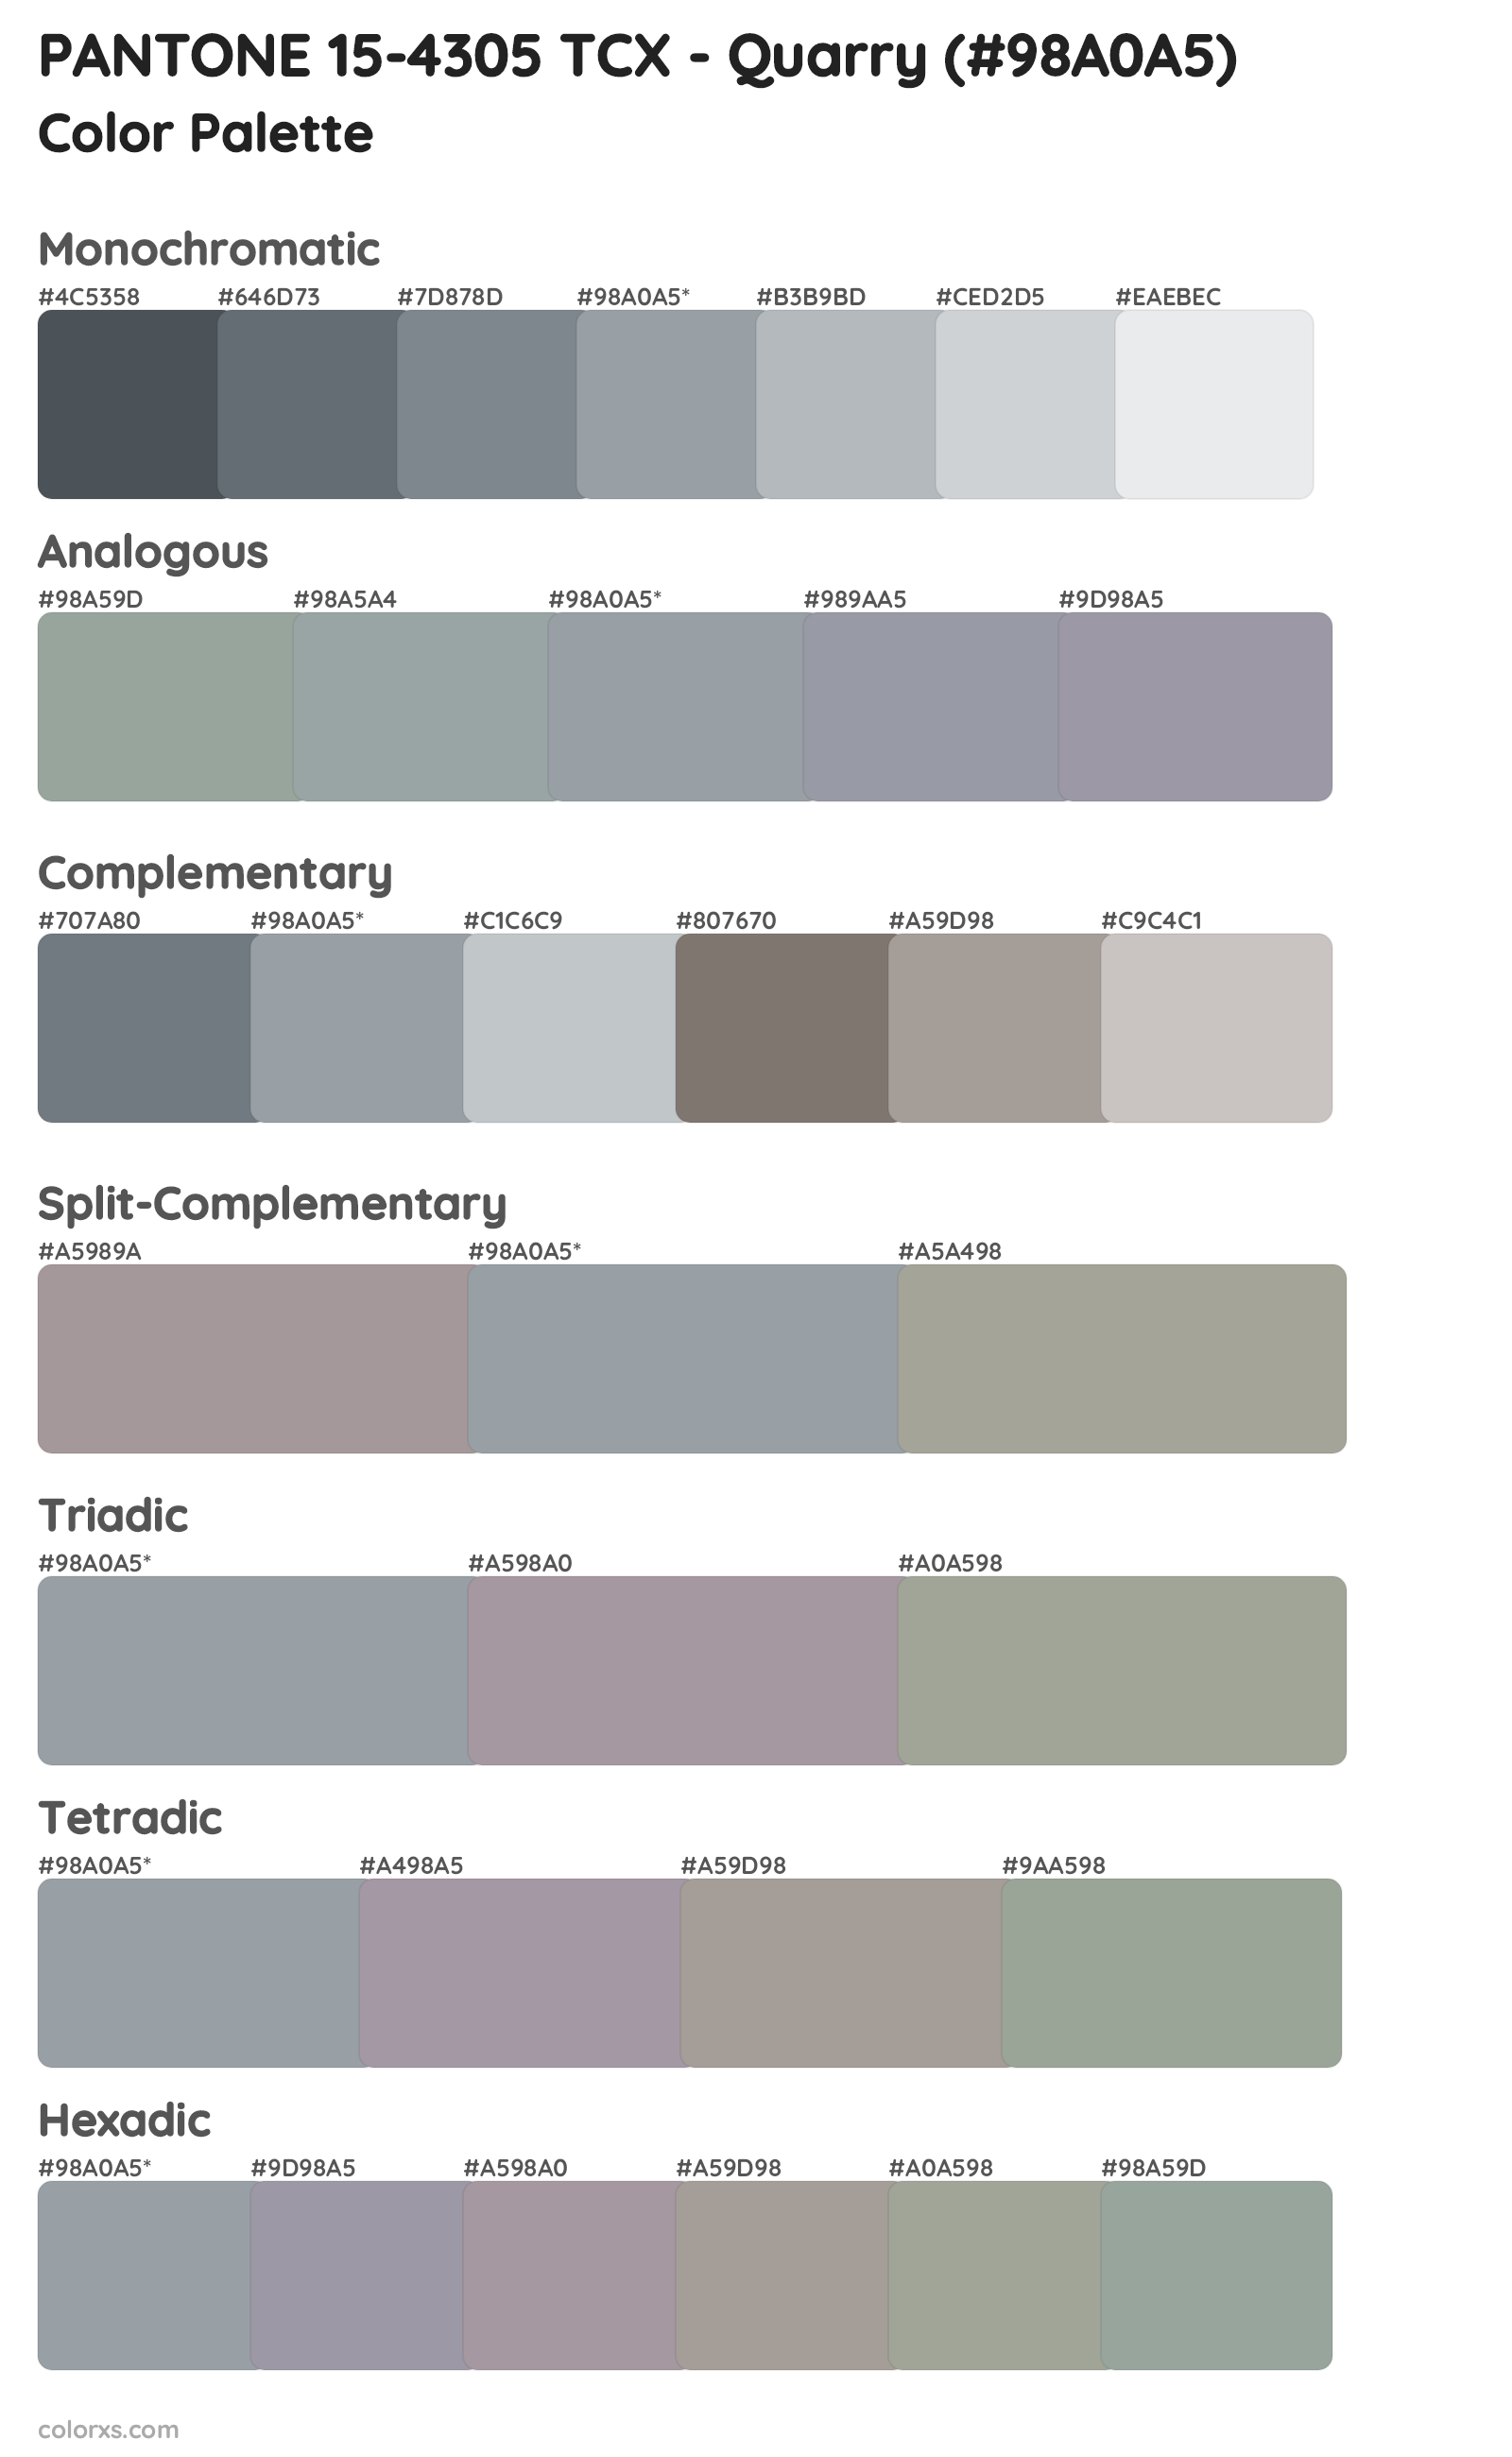 PANTONE 15-4305 TCX - Quarry Color Scheme Palettes